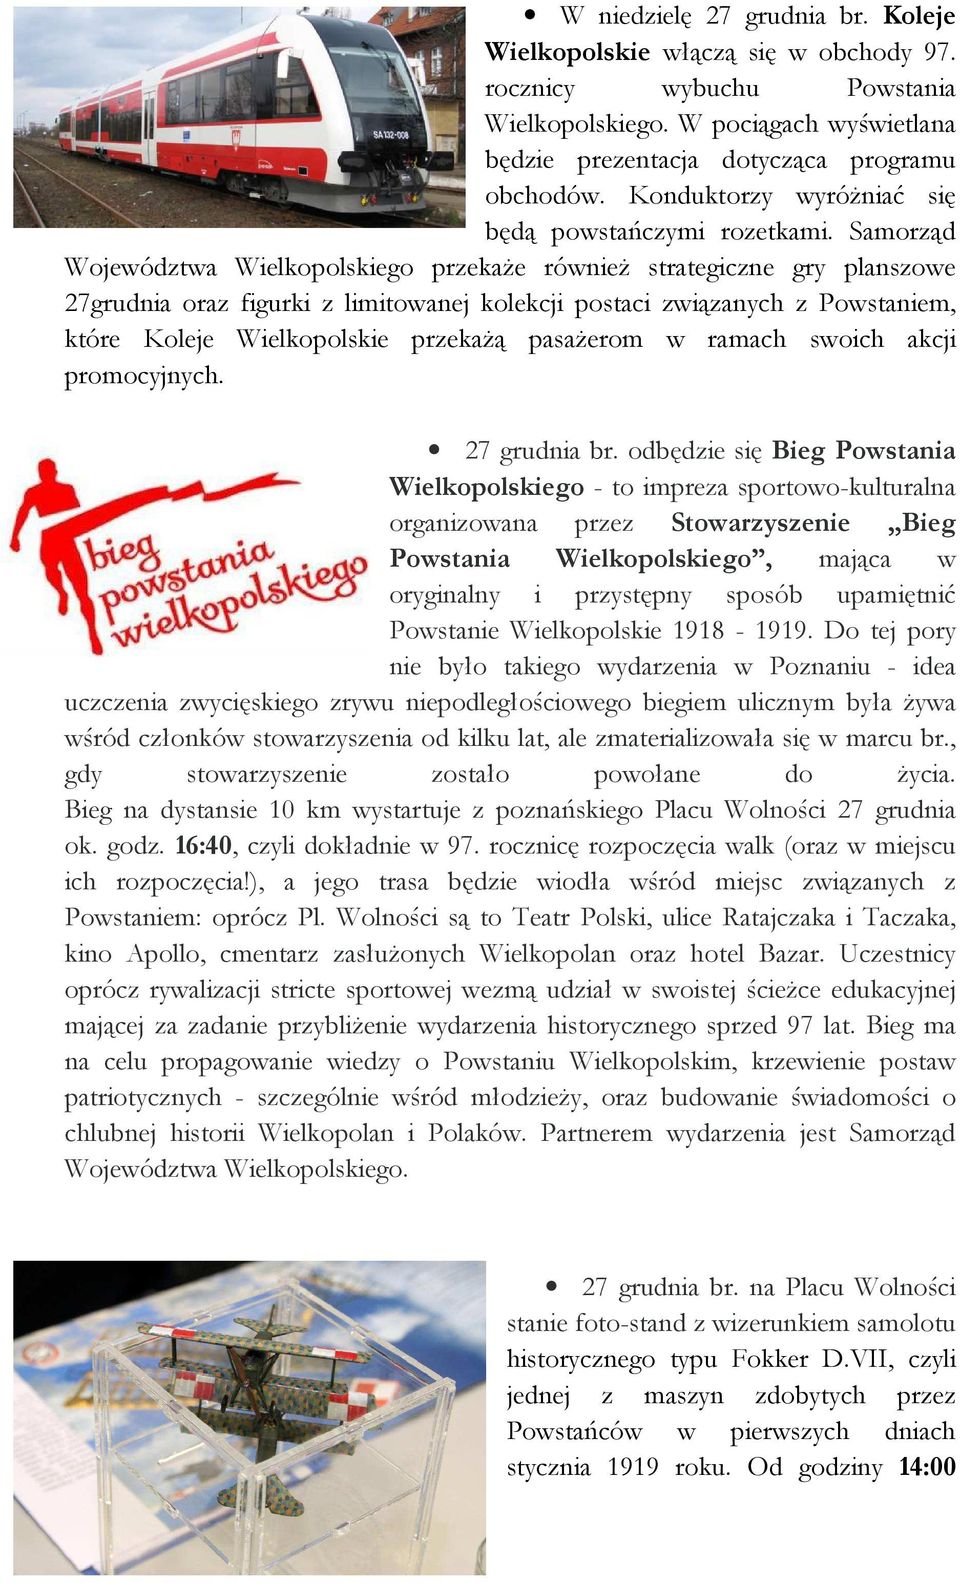 Samorząd Województwa Wielkopolskiego przekaże również strategiczne gry planszowe 27grudnia oraz figurki z limitowanej kolekcji postaci związanych z Powstaniem, które Koleje Wielkopolskie przekażą